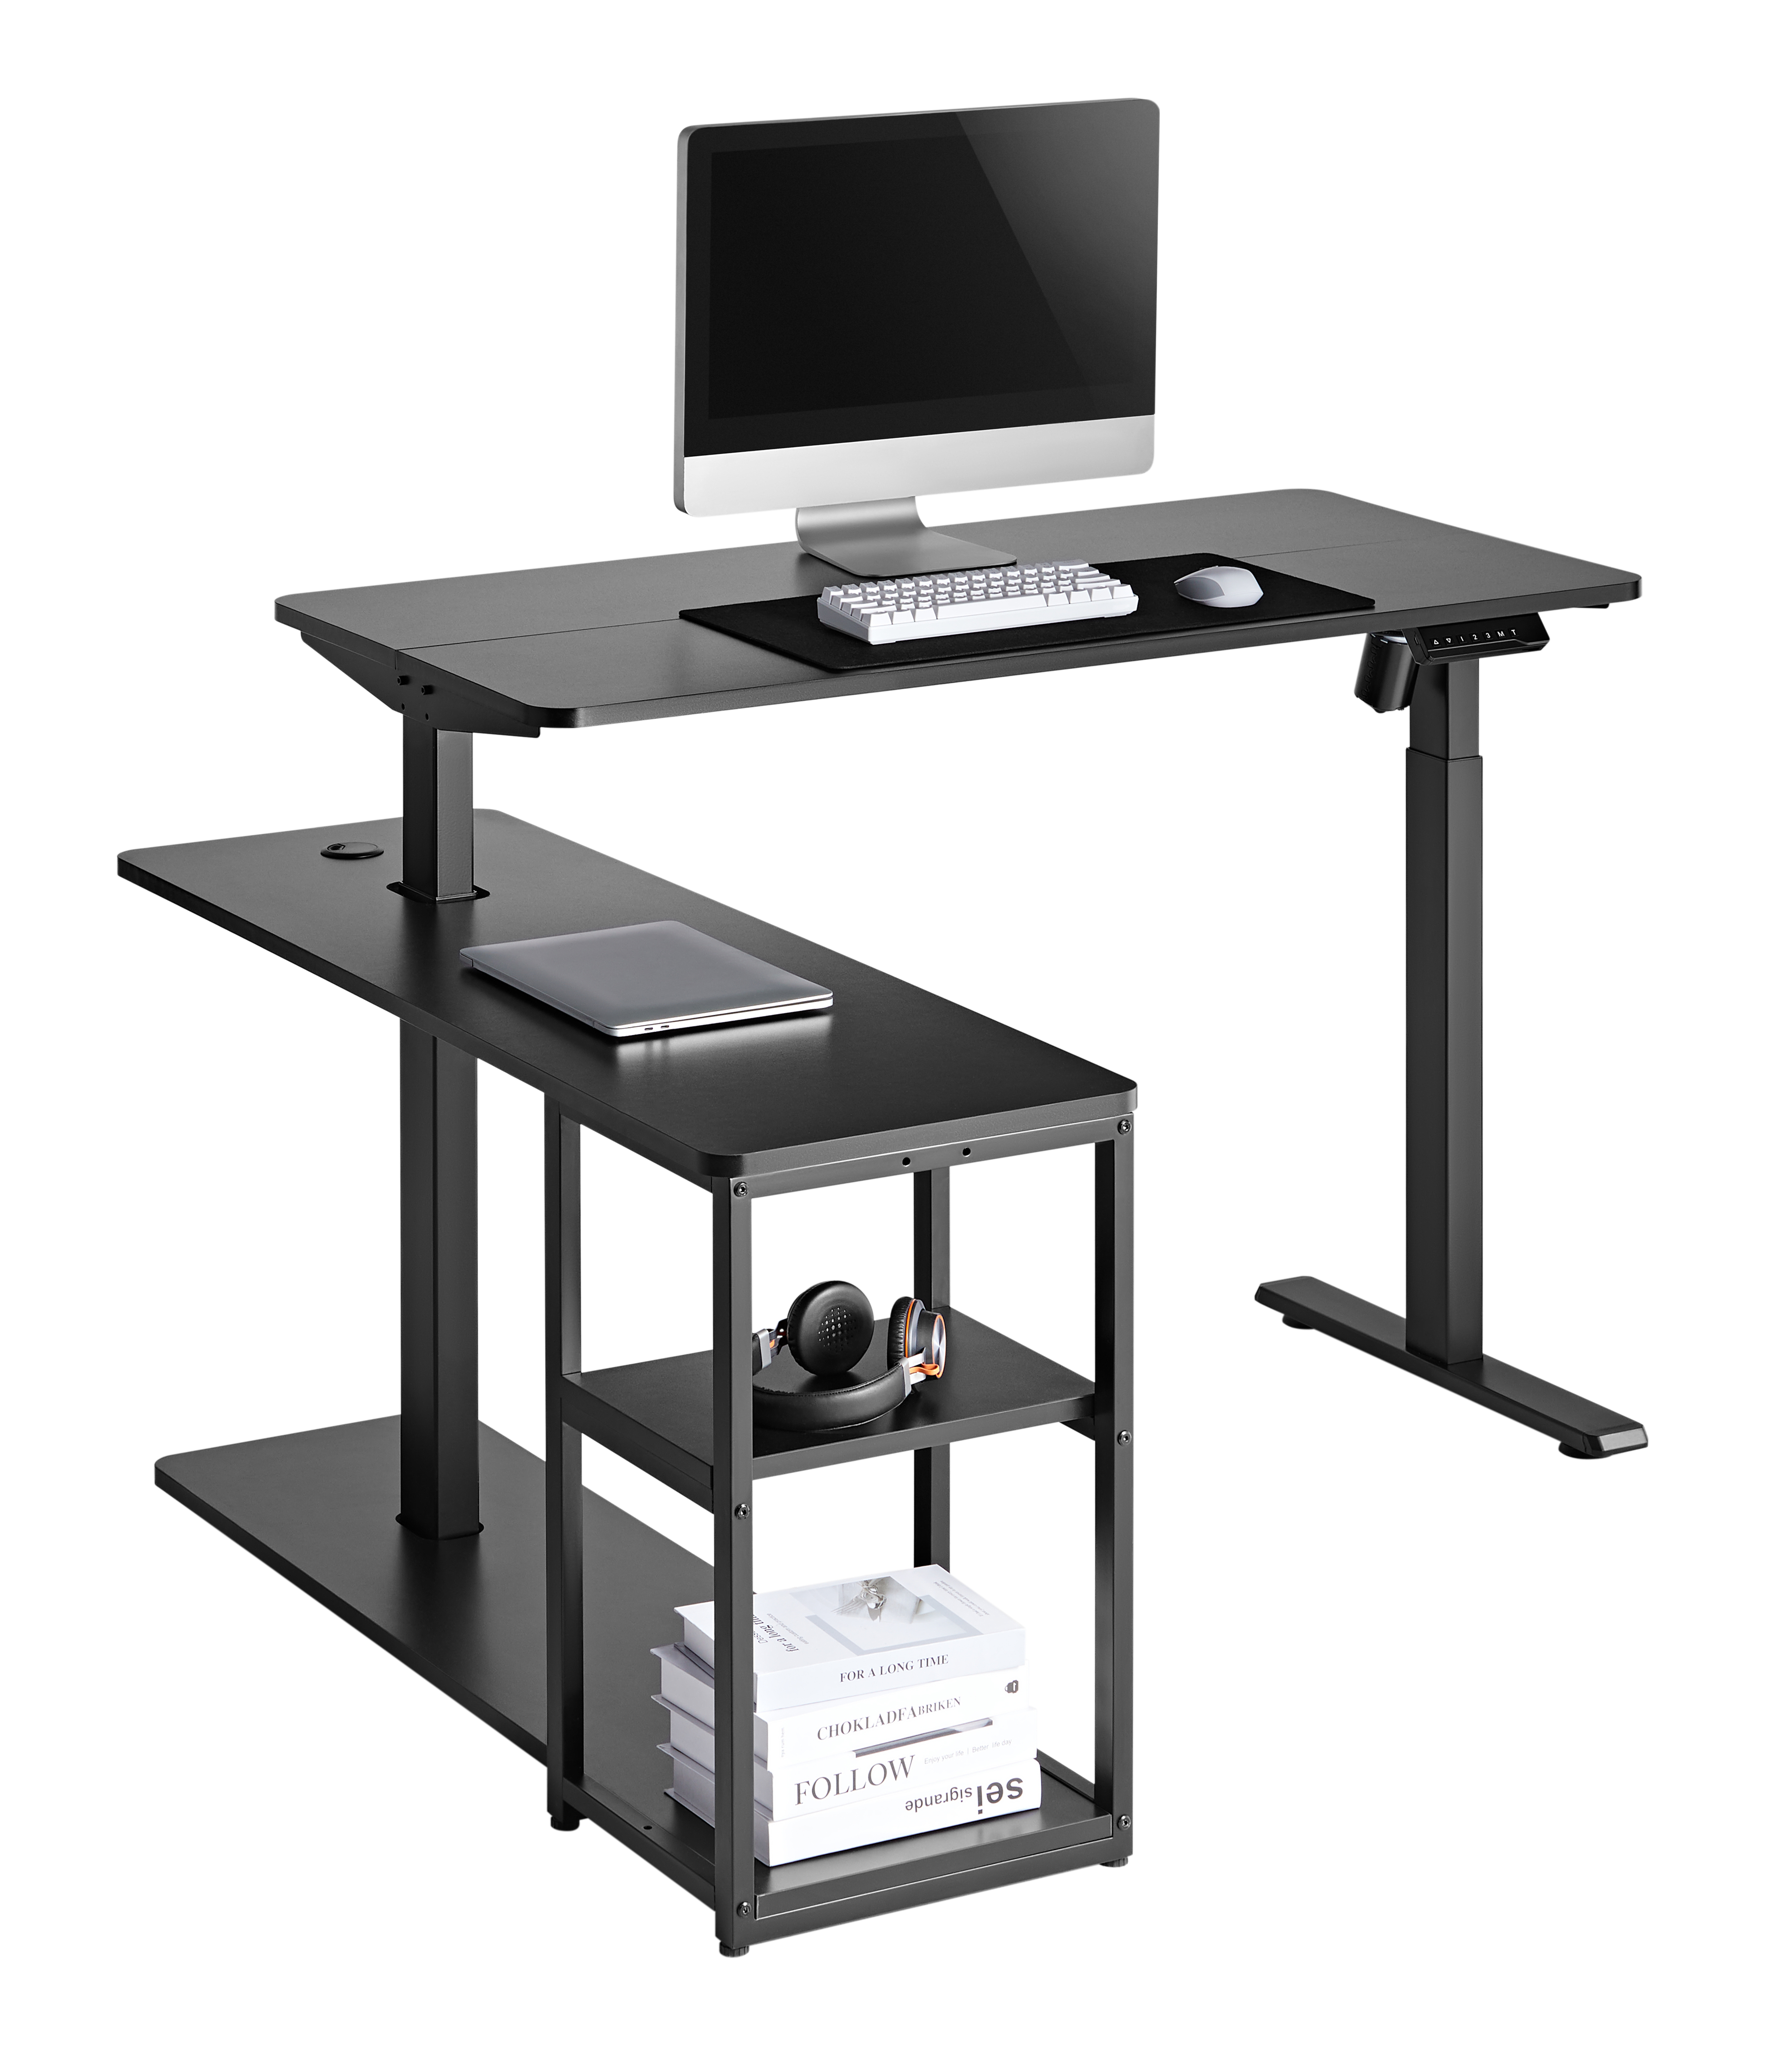 Комп'ютерний стіл OfficePro з електрорегулюванням висоти чорний (ODE119B) - фото 5